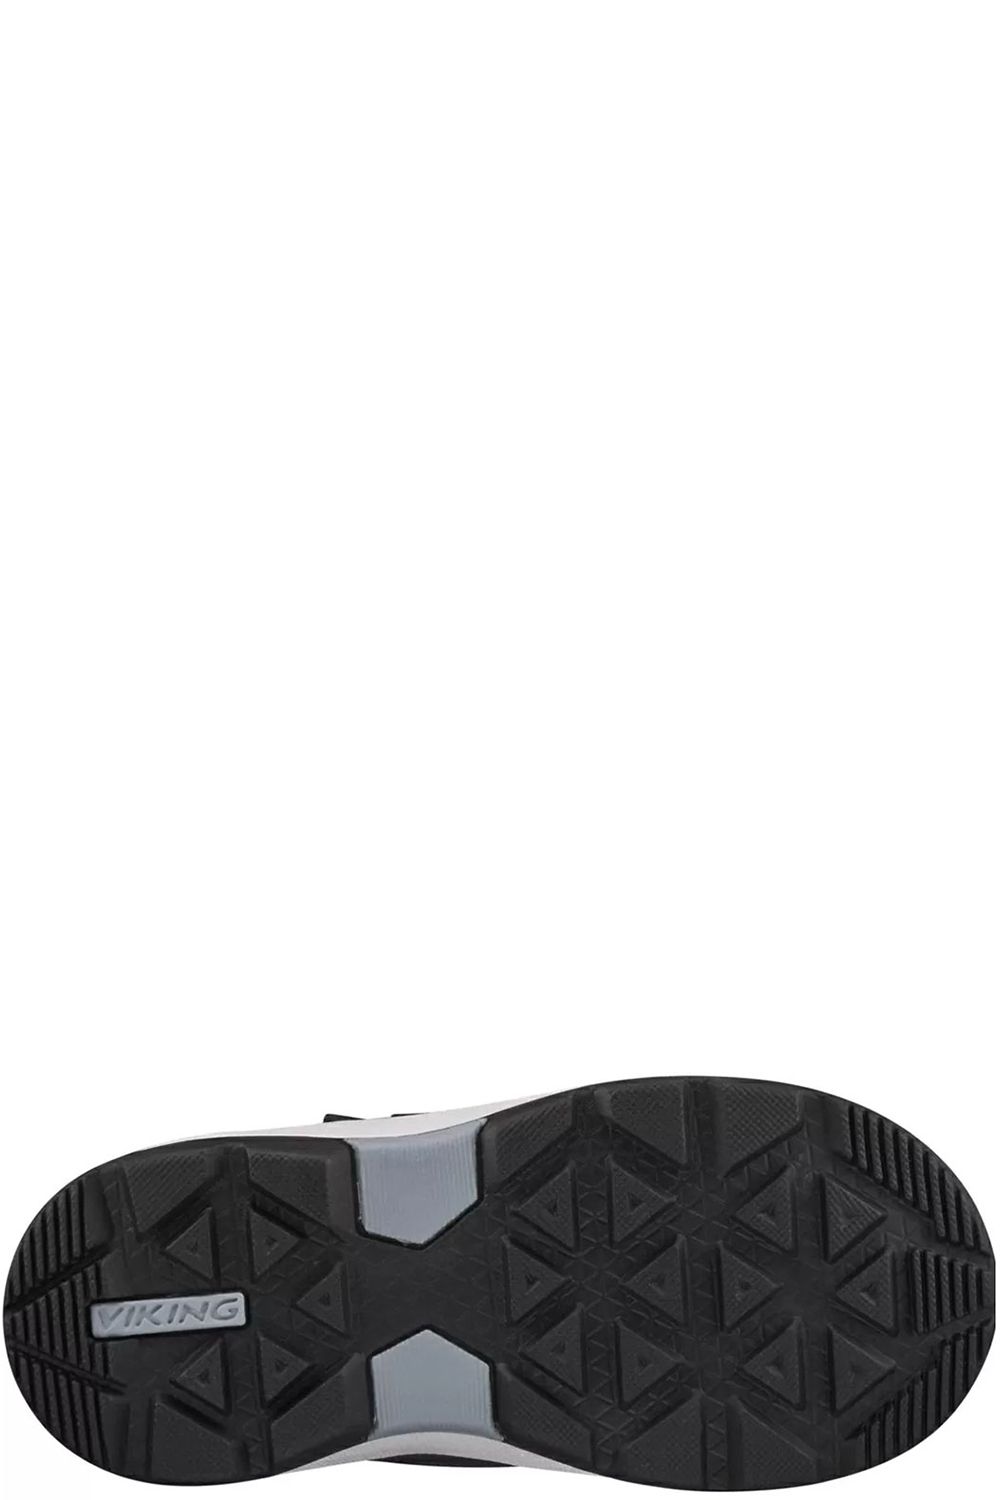 Ботинки Viking, размер 26, цвет черный 3-87025-2702 - фото 2